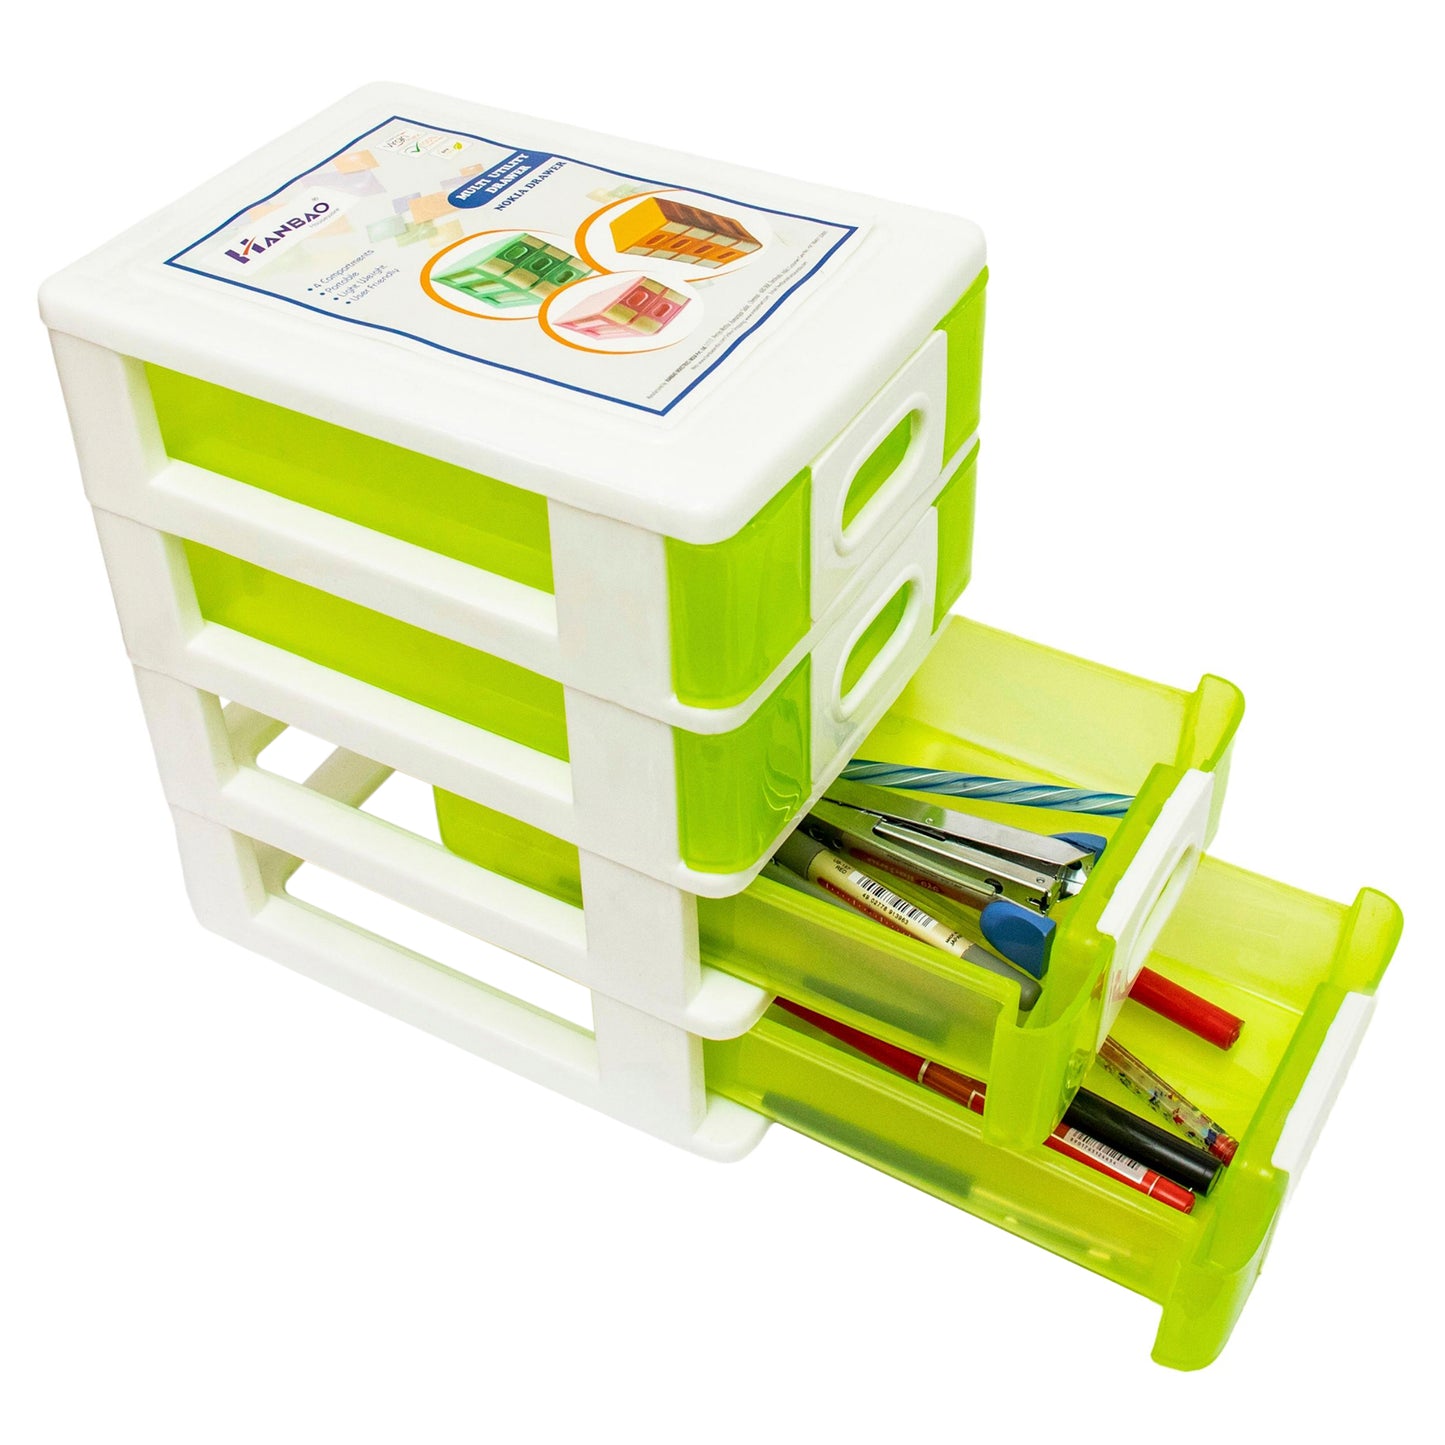 Hanbao small 4 Compartments storage box/organizer for small items, 24cm * 15cm * 21cm, Plastic Small Drawer/Desk Organizer